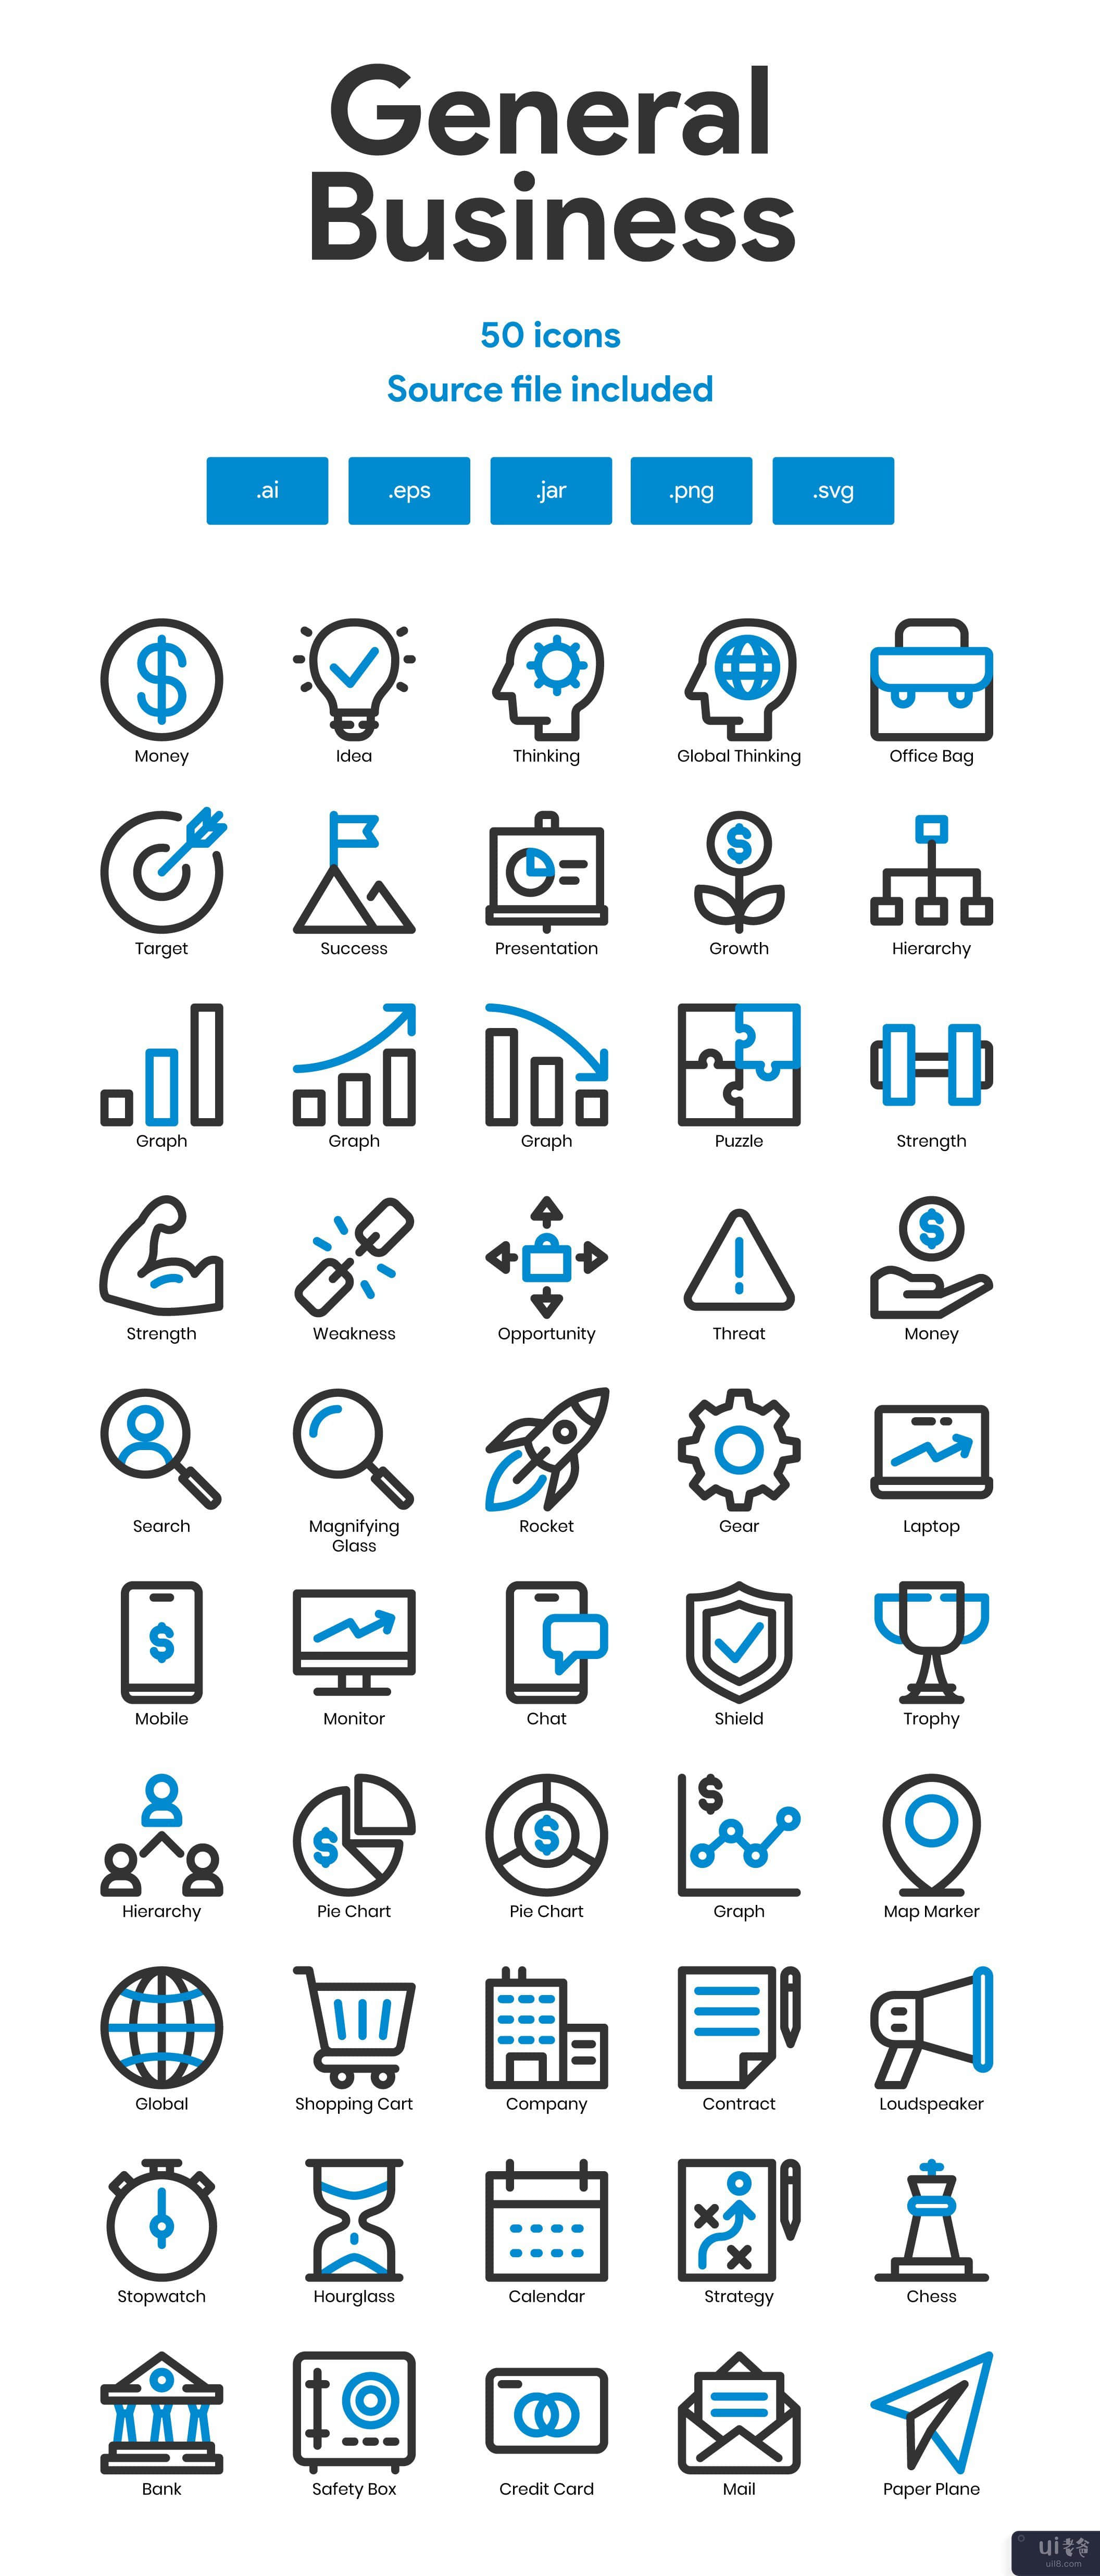 一般商业和金融图标集(General Business and Finance Icon Set)插图